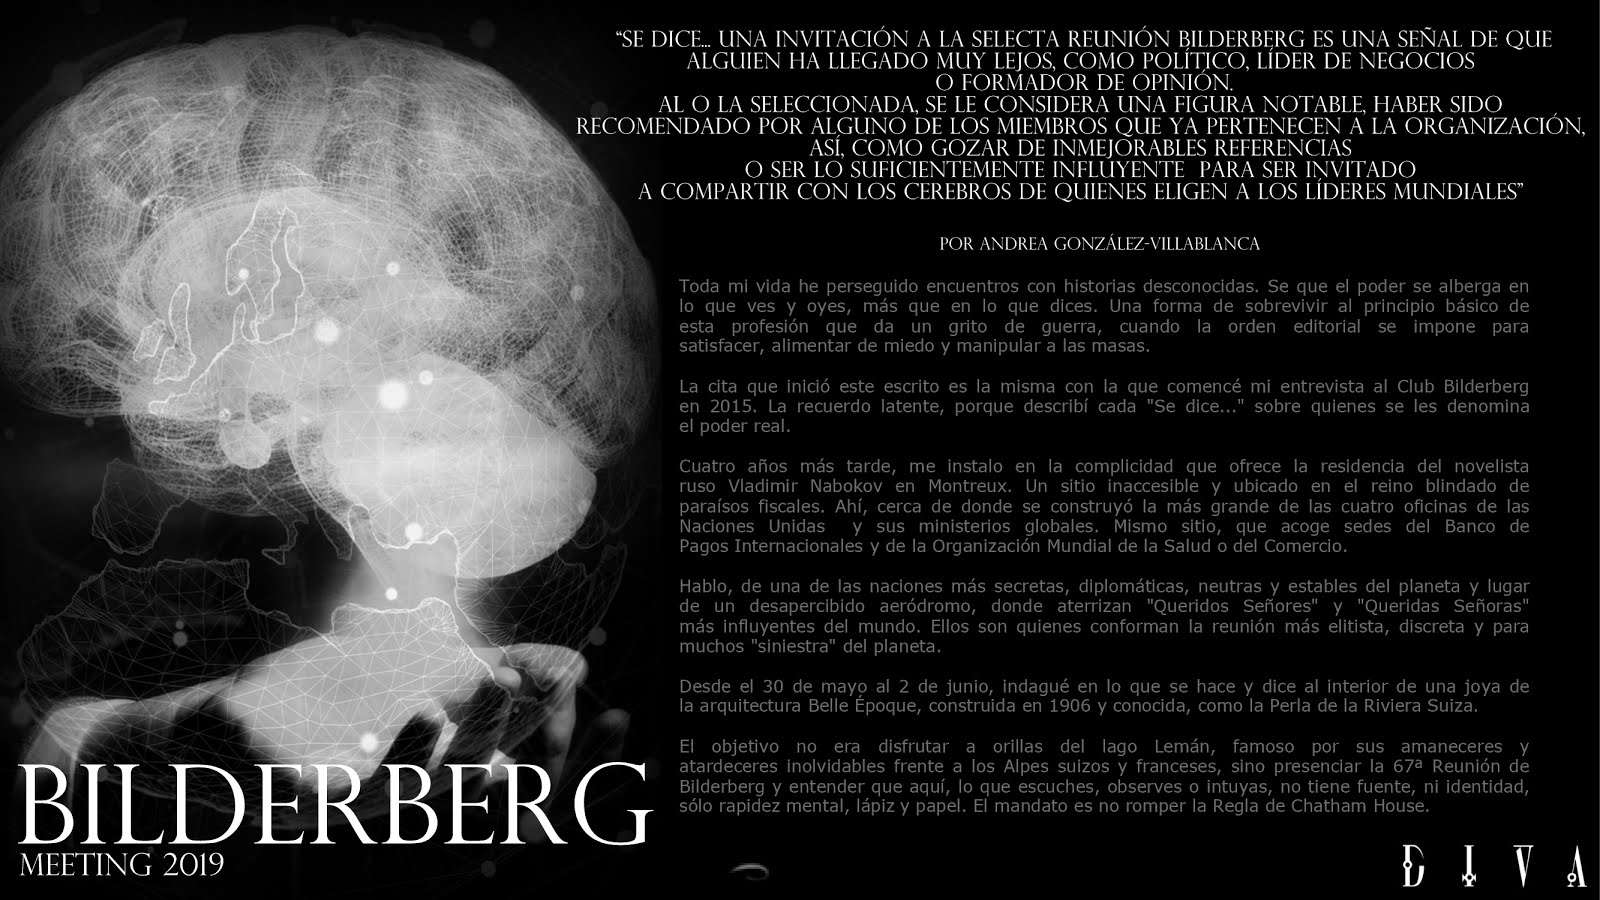 ¡EXCLUSIVO! • DIVA y la 67ª Reunión Bilderberg 2019